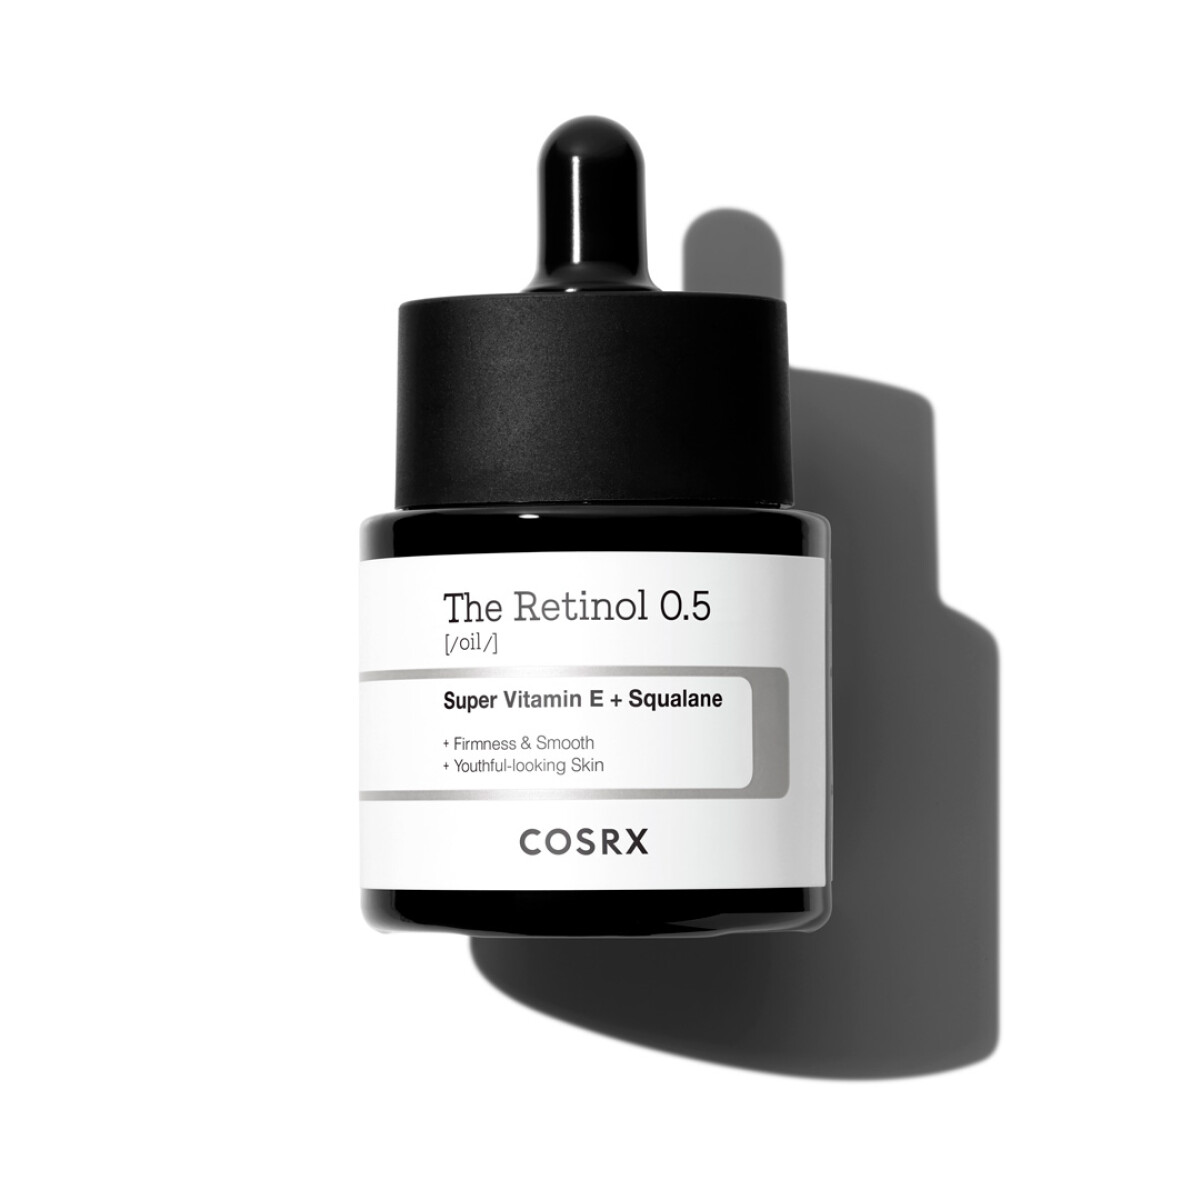 THE RETINOL 0.5 OIL COSRX - Serum/Aceite Retinol 0.5 Vitamina E y escualeno 20ML 